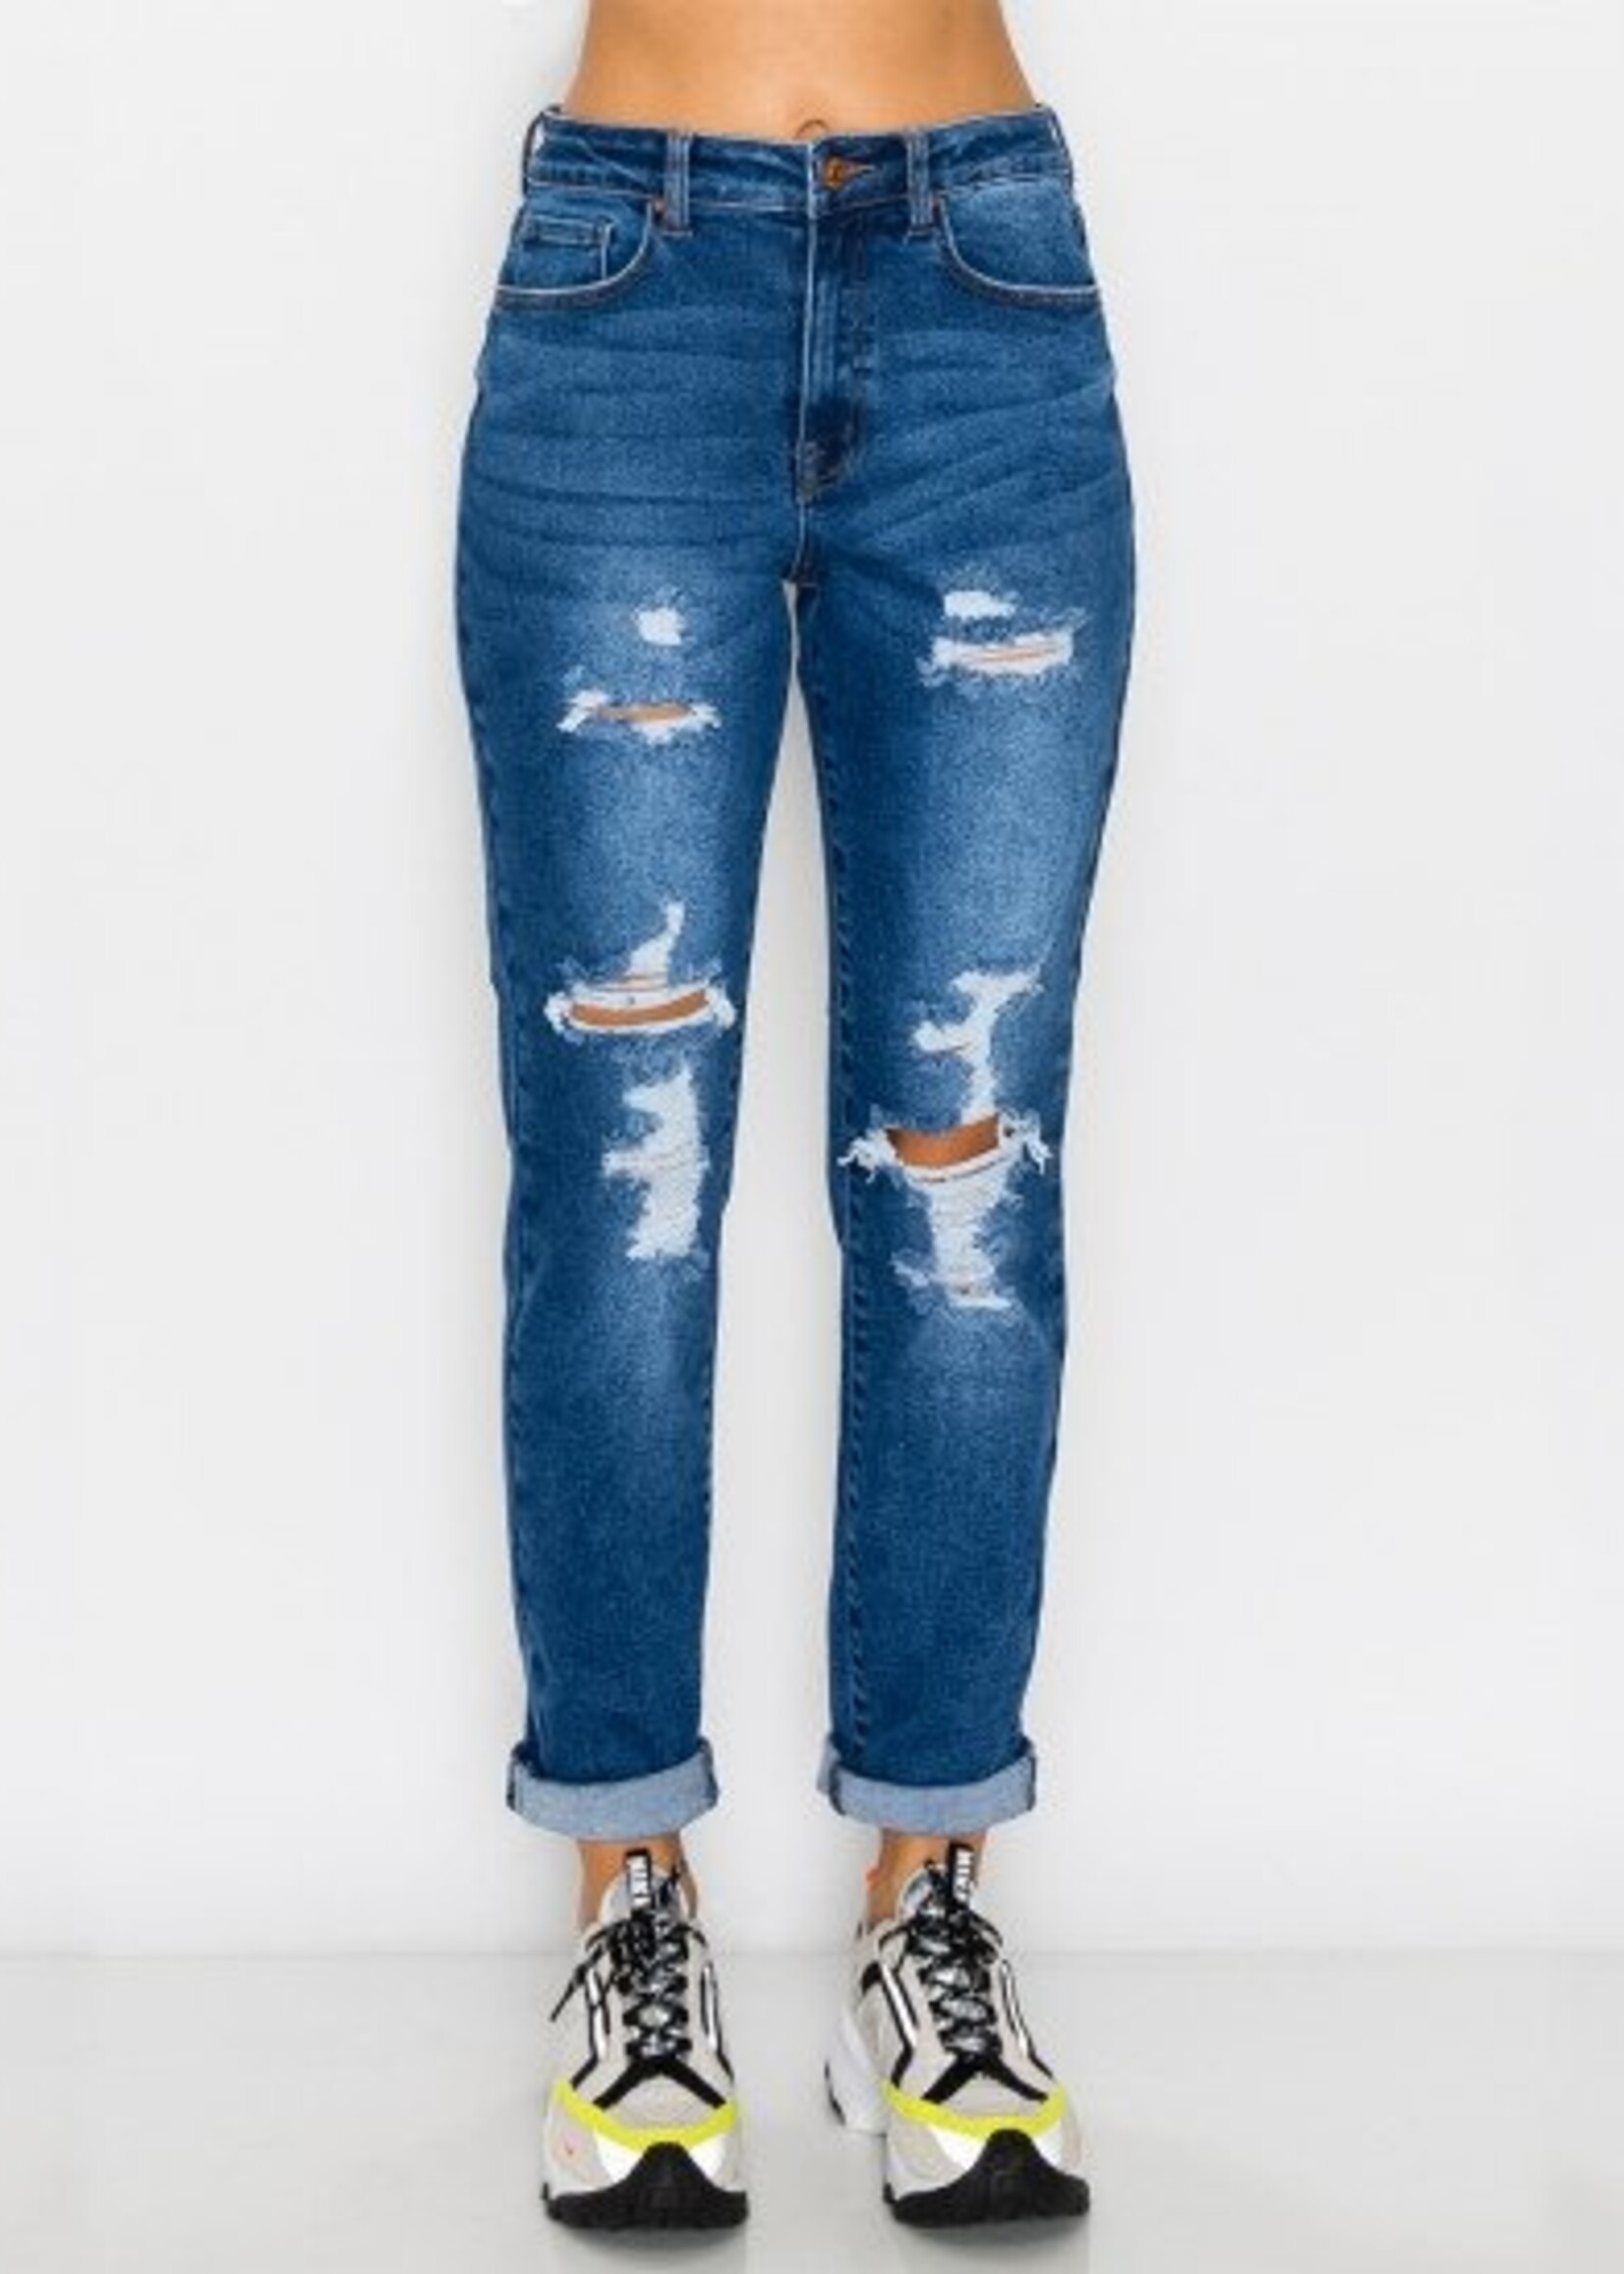 Wax Jeans WOMEN'S BOYFRIEND WAX JEANS 90252